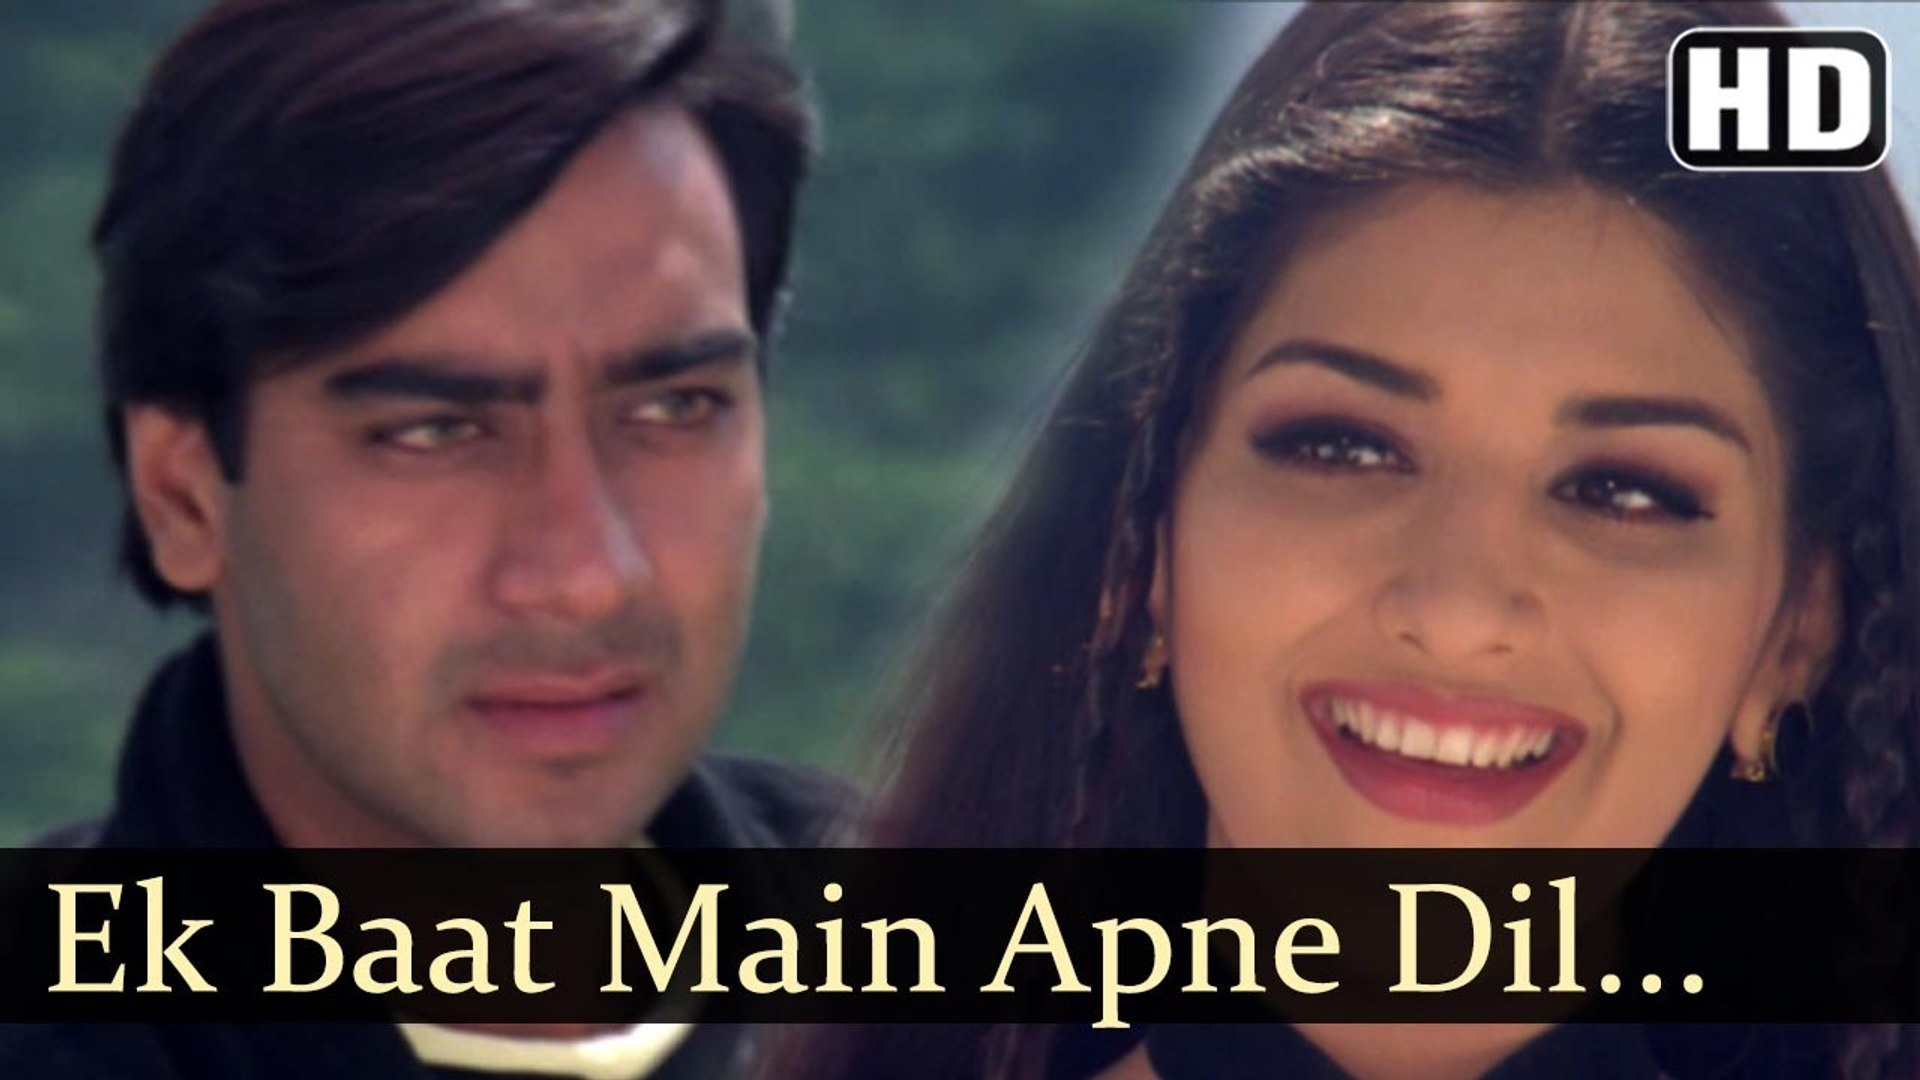 Ek Baat Main Apne Diljale (1996) - Sonali And Ajay Devgan , HD Wallpaper & Backgrounds